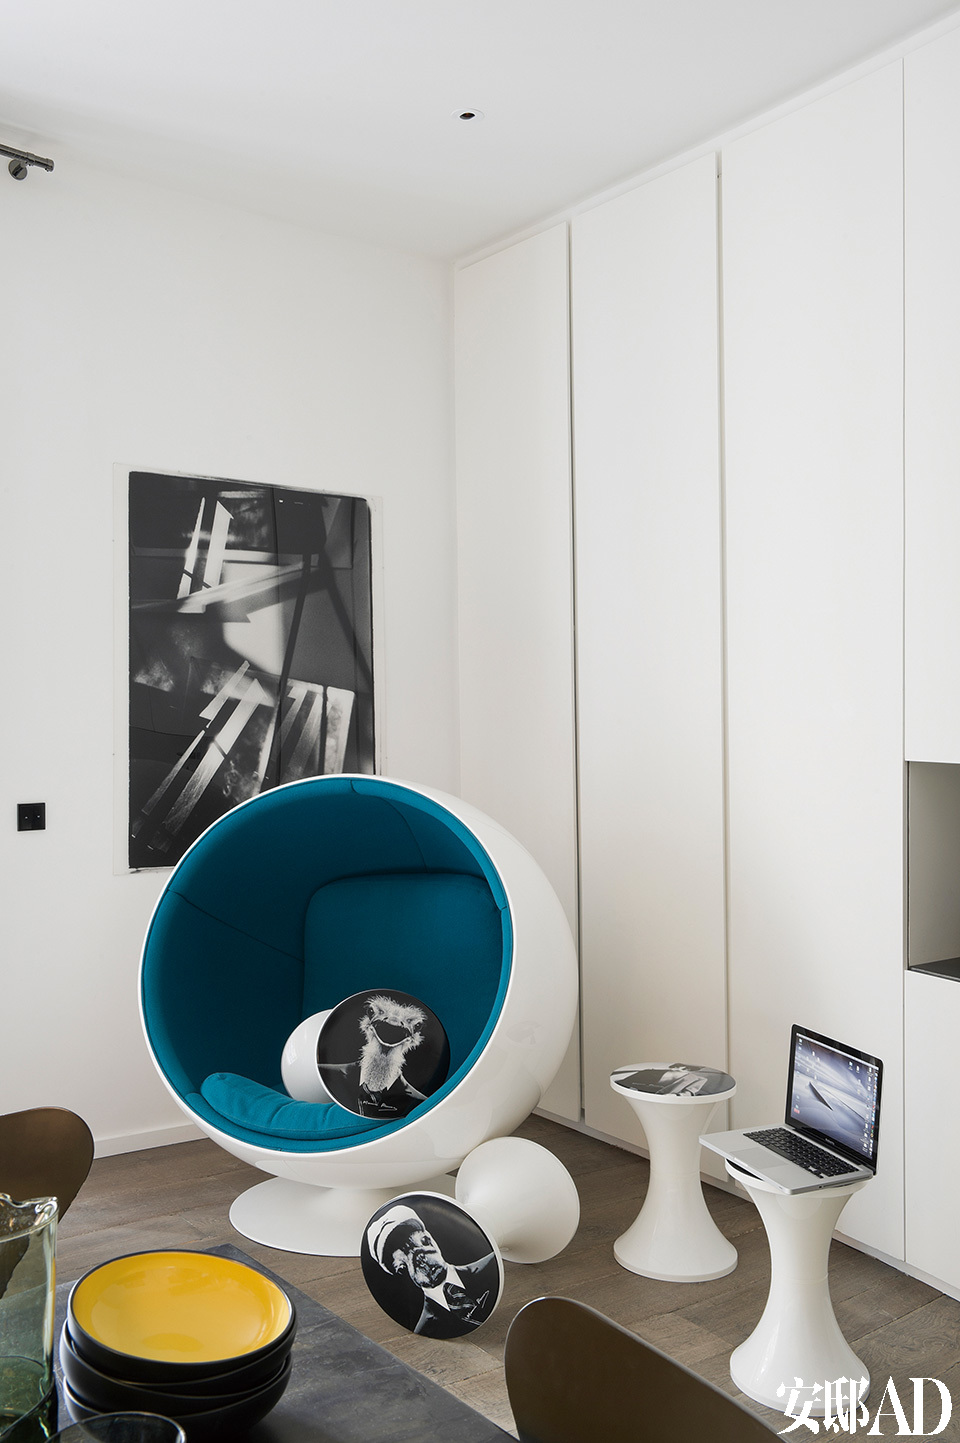 房间一角摆放着由Eero Aarnio设计的蓝白色玻璃纤维球形椅(Fiber Ball Chair)，散落的带有黑白图片的几只小凳子是摄影师和设计师Maurice Renoma对Tam Tam凳的再设计。